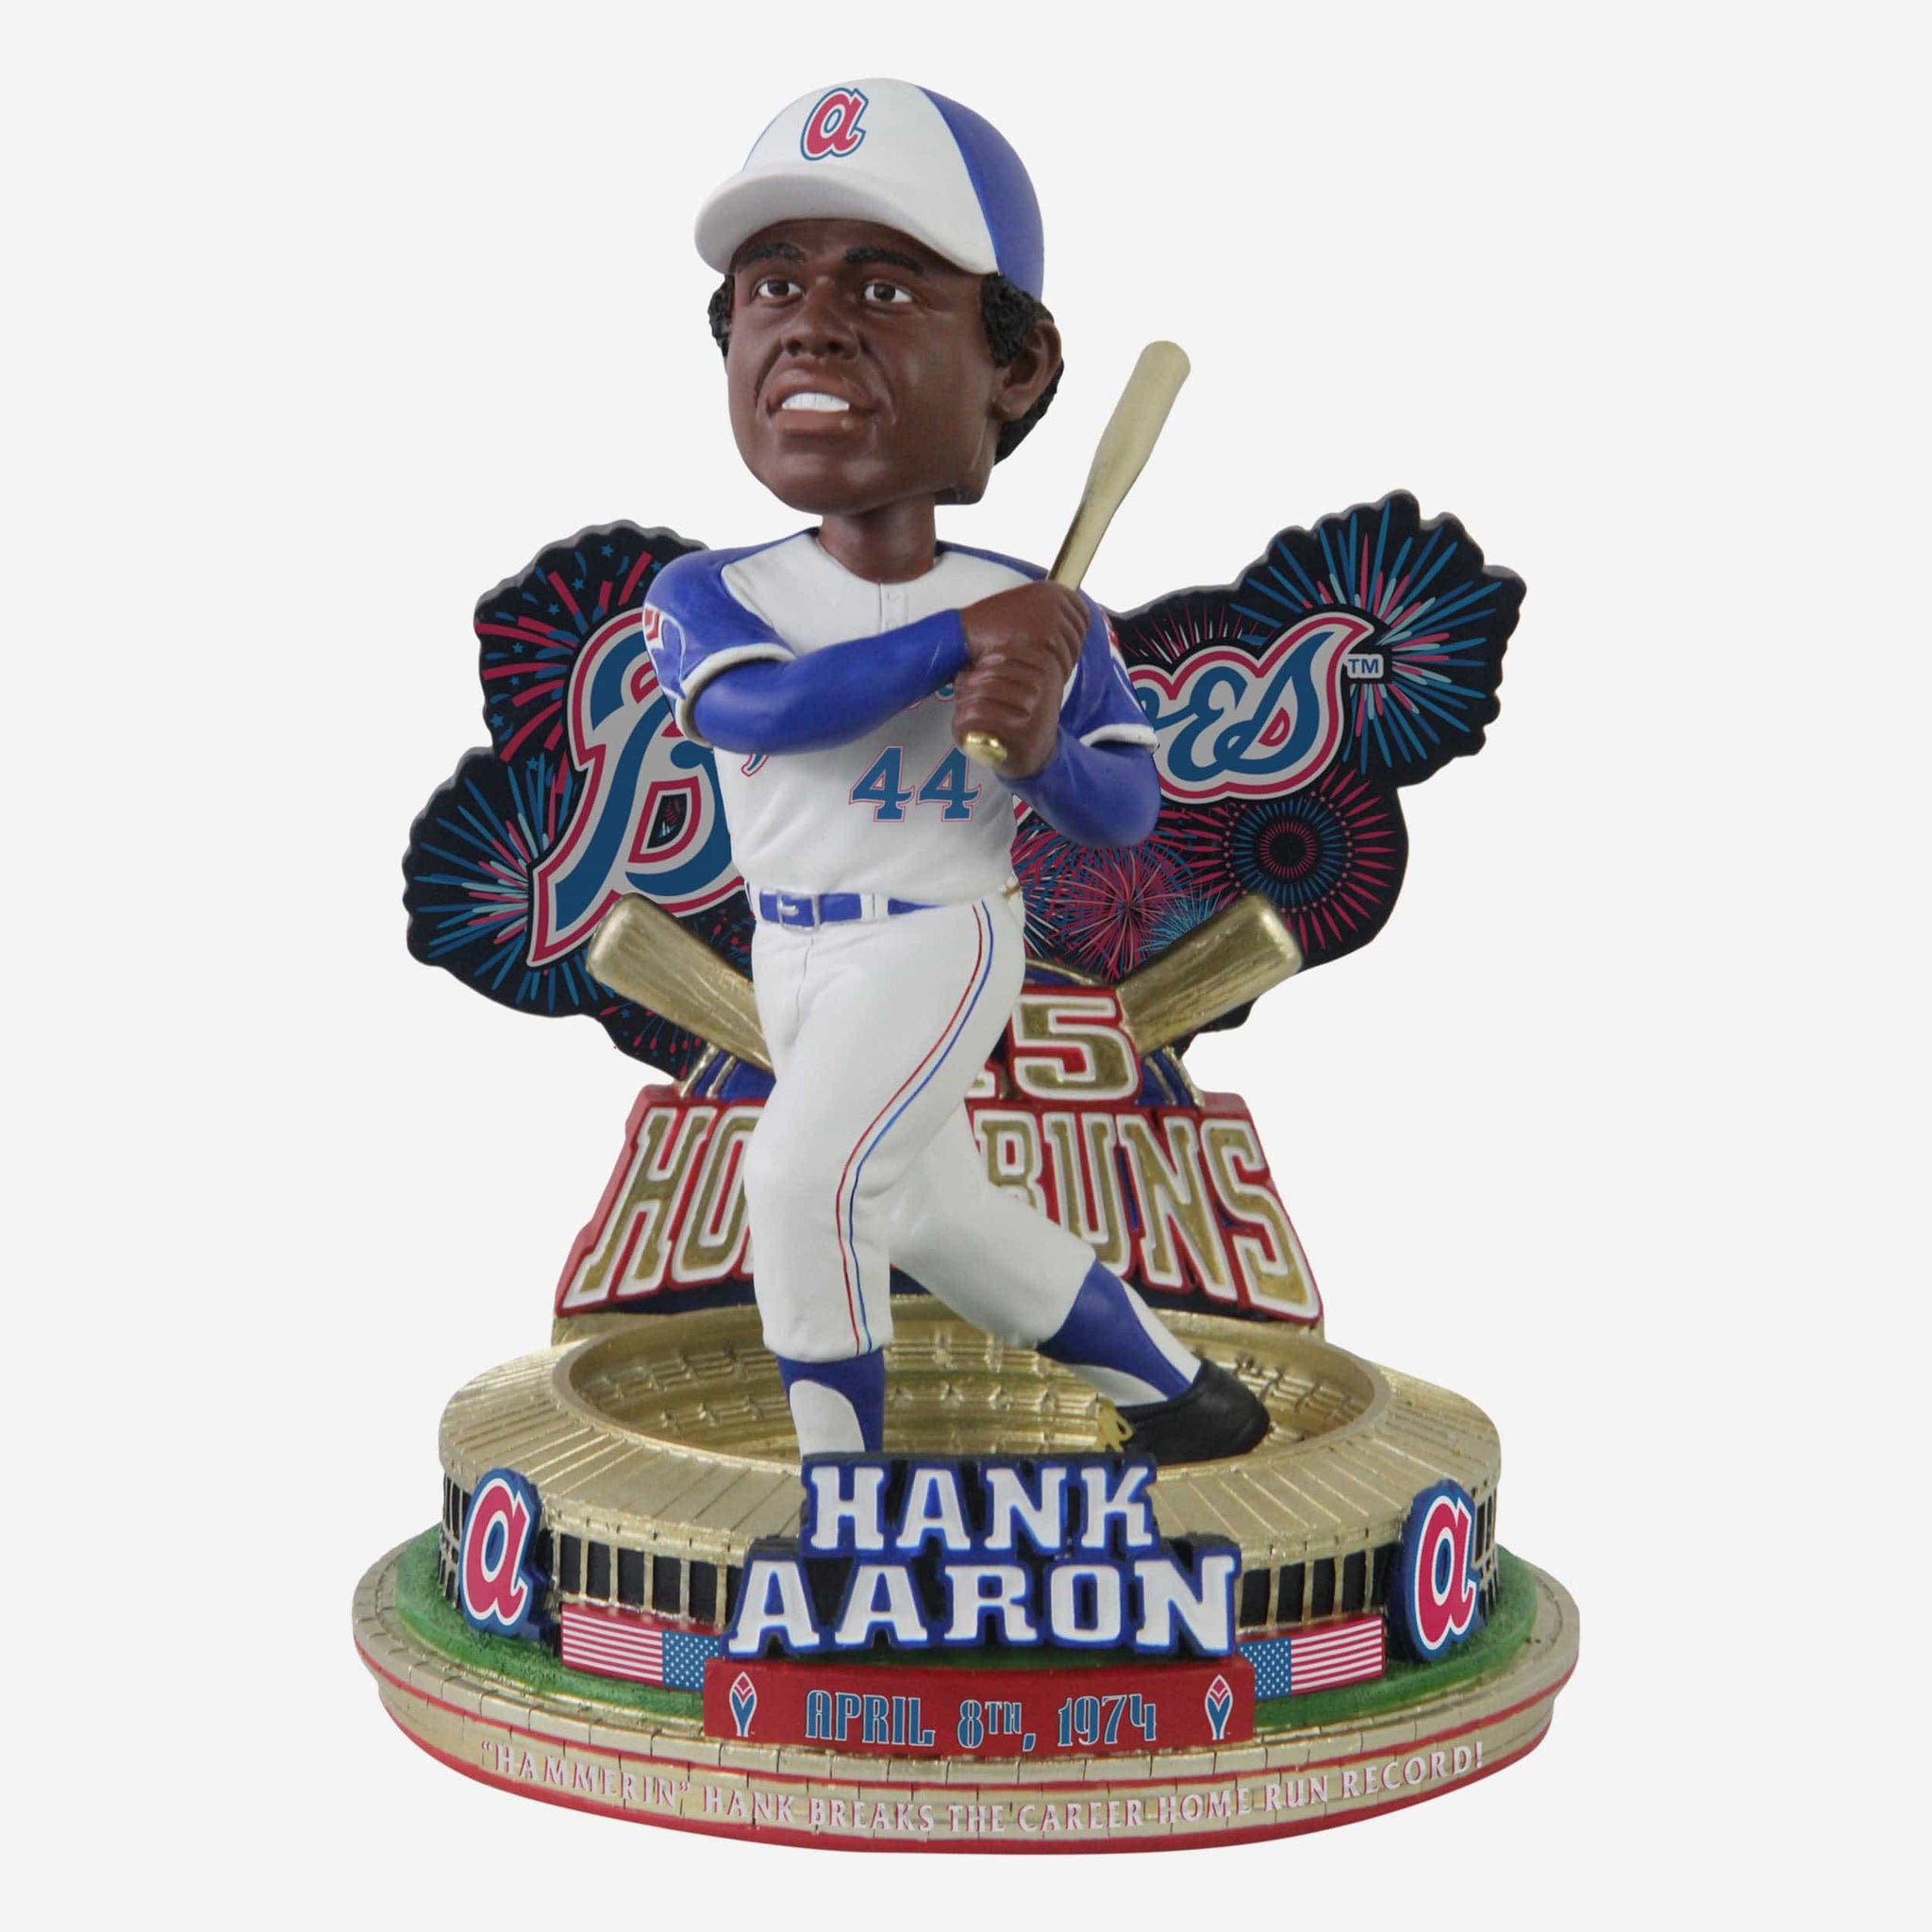 Hank Aaron MLB Fan Jerseys for sale